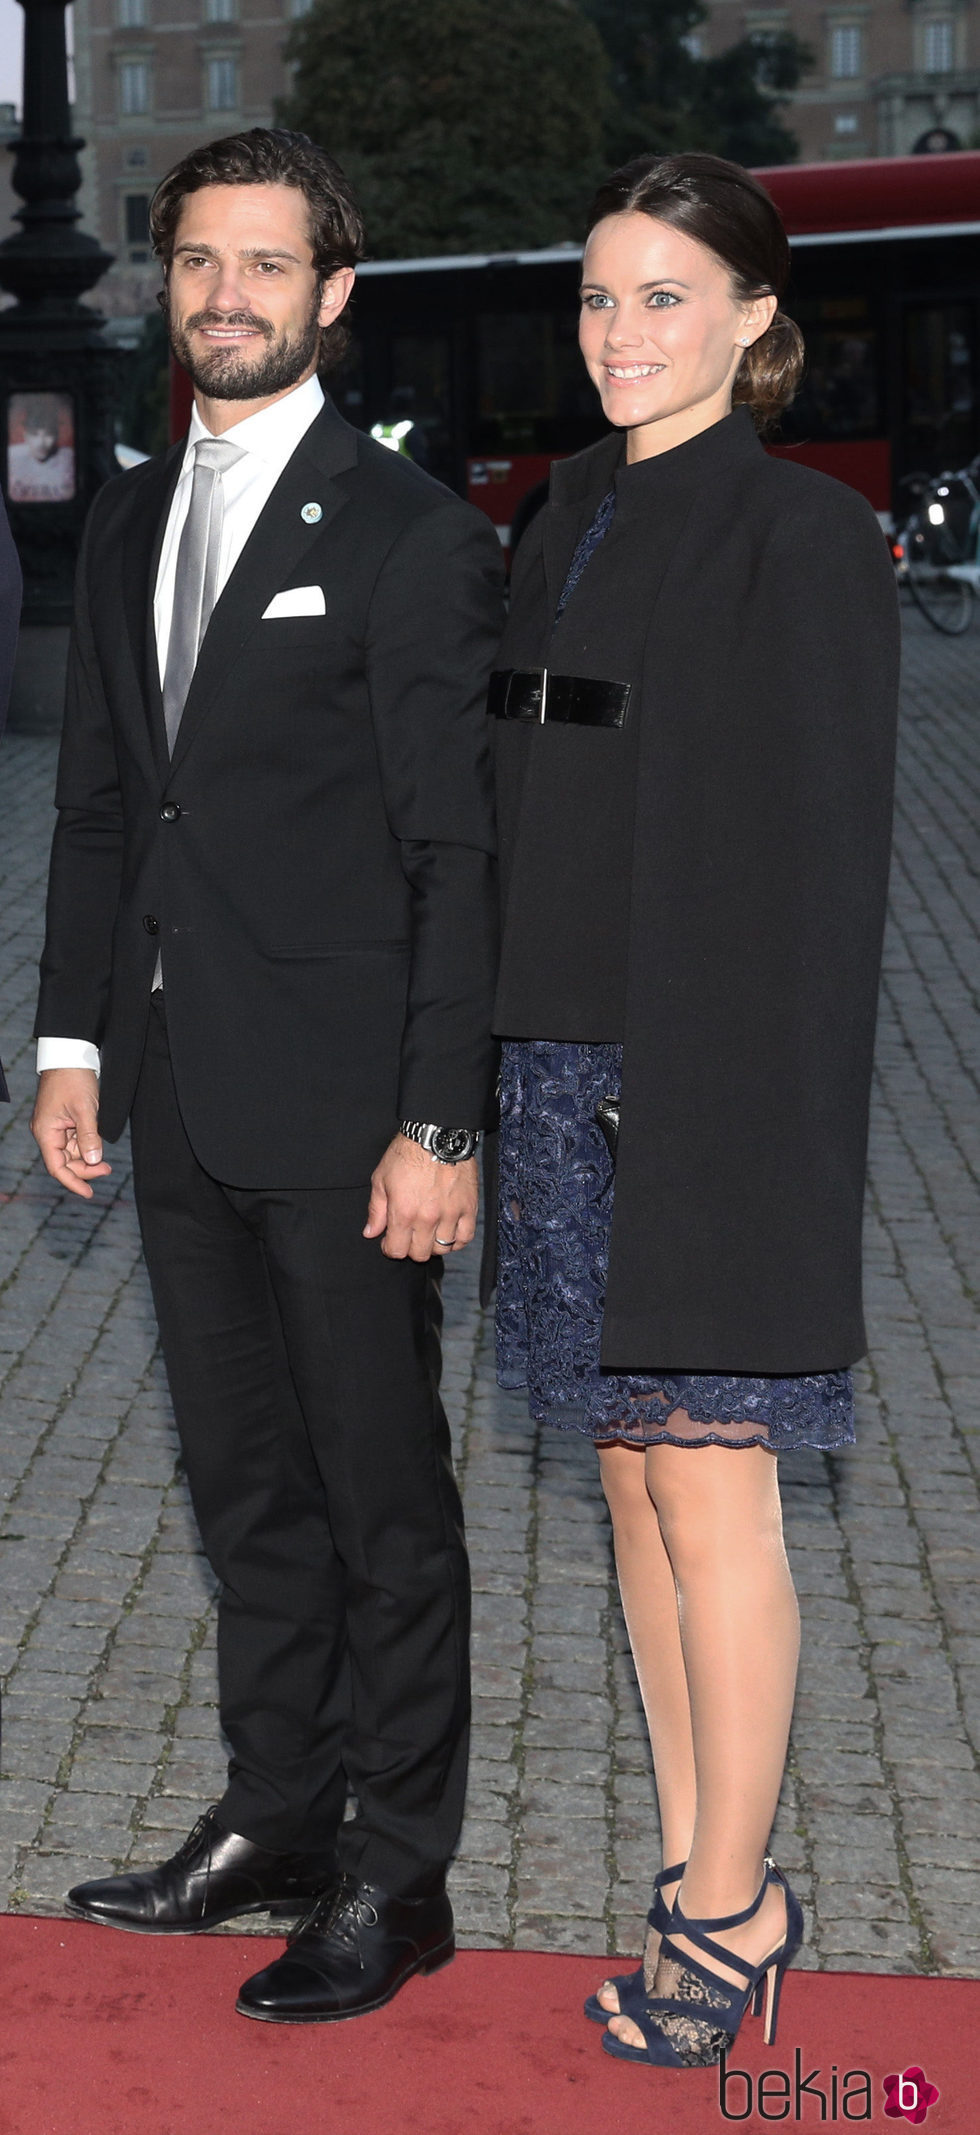 Carlos Felipe de Suecia y Sofia Hellqvist en el concierto tras la apertura del Parlamento 2015